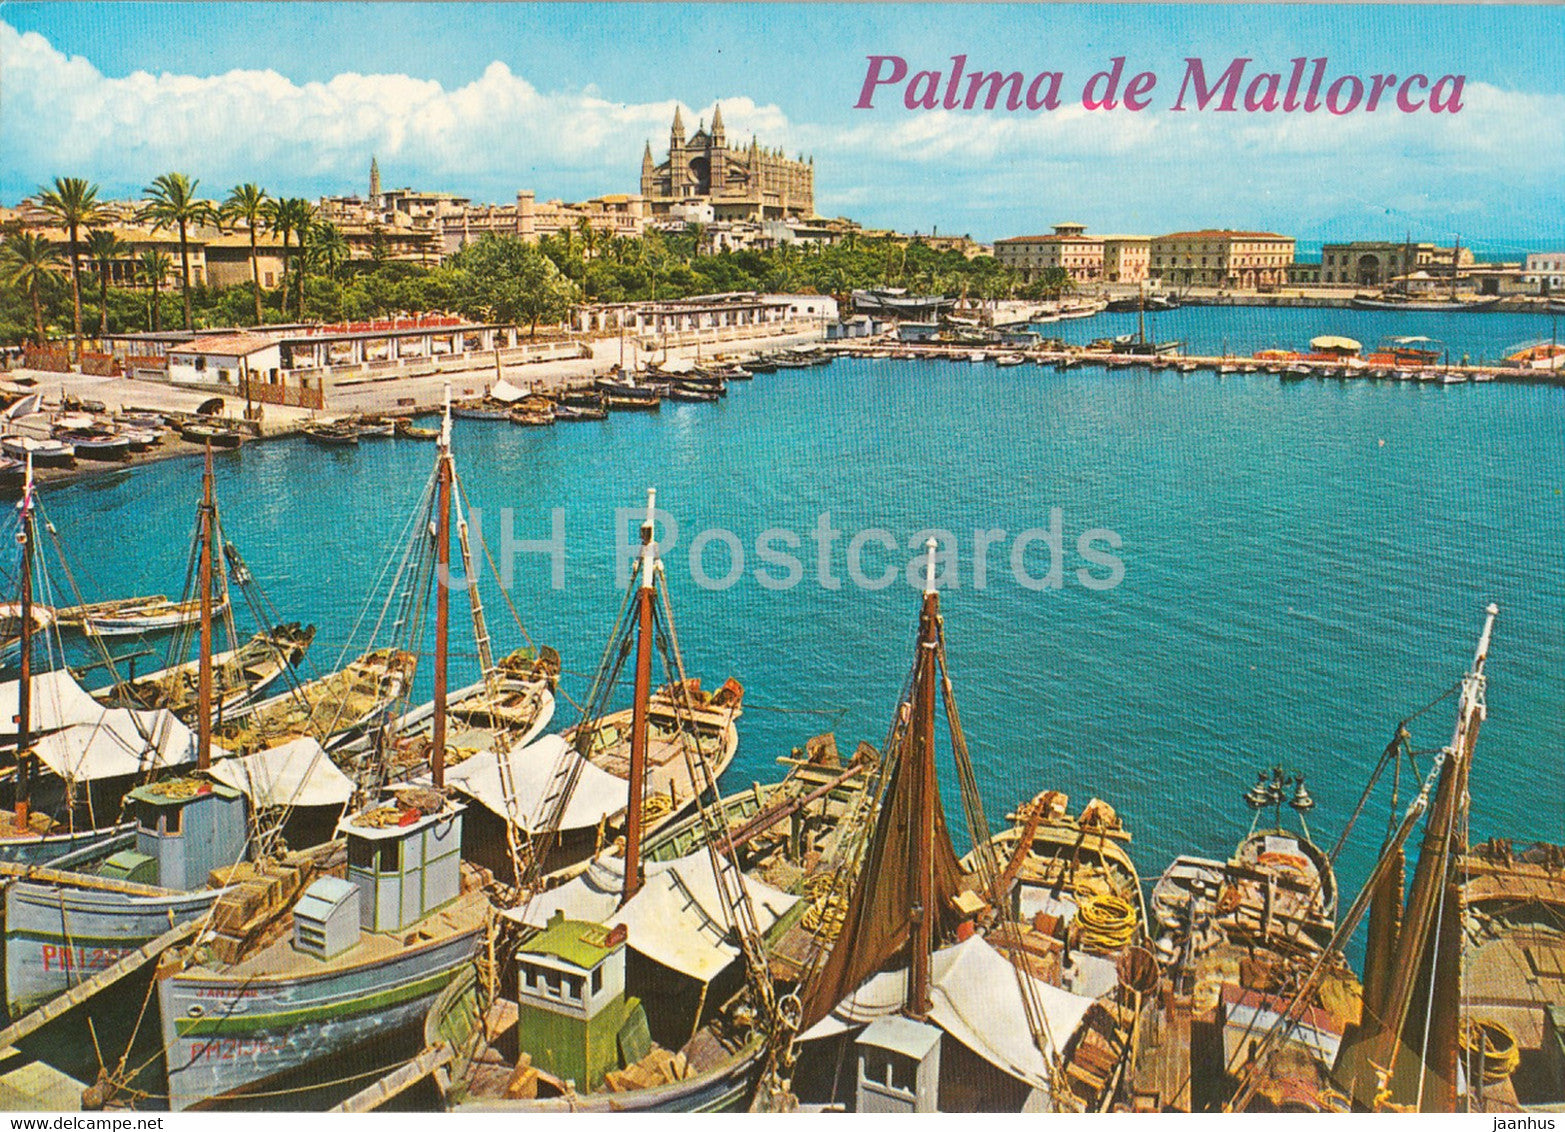 Palma de Mallorca - La Catedral y La Lonja desde el muelle de pescadores - boat - Spain - used - JH Postcards